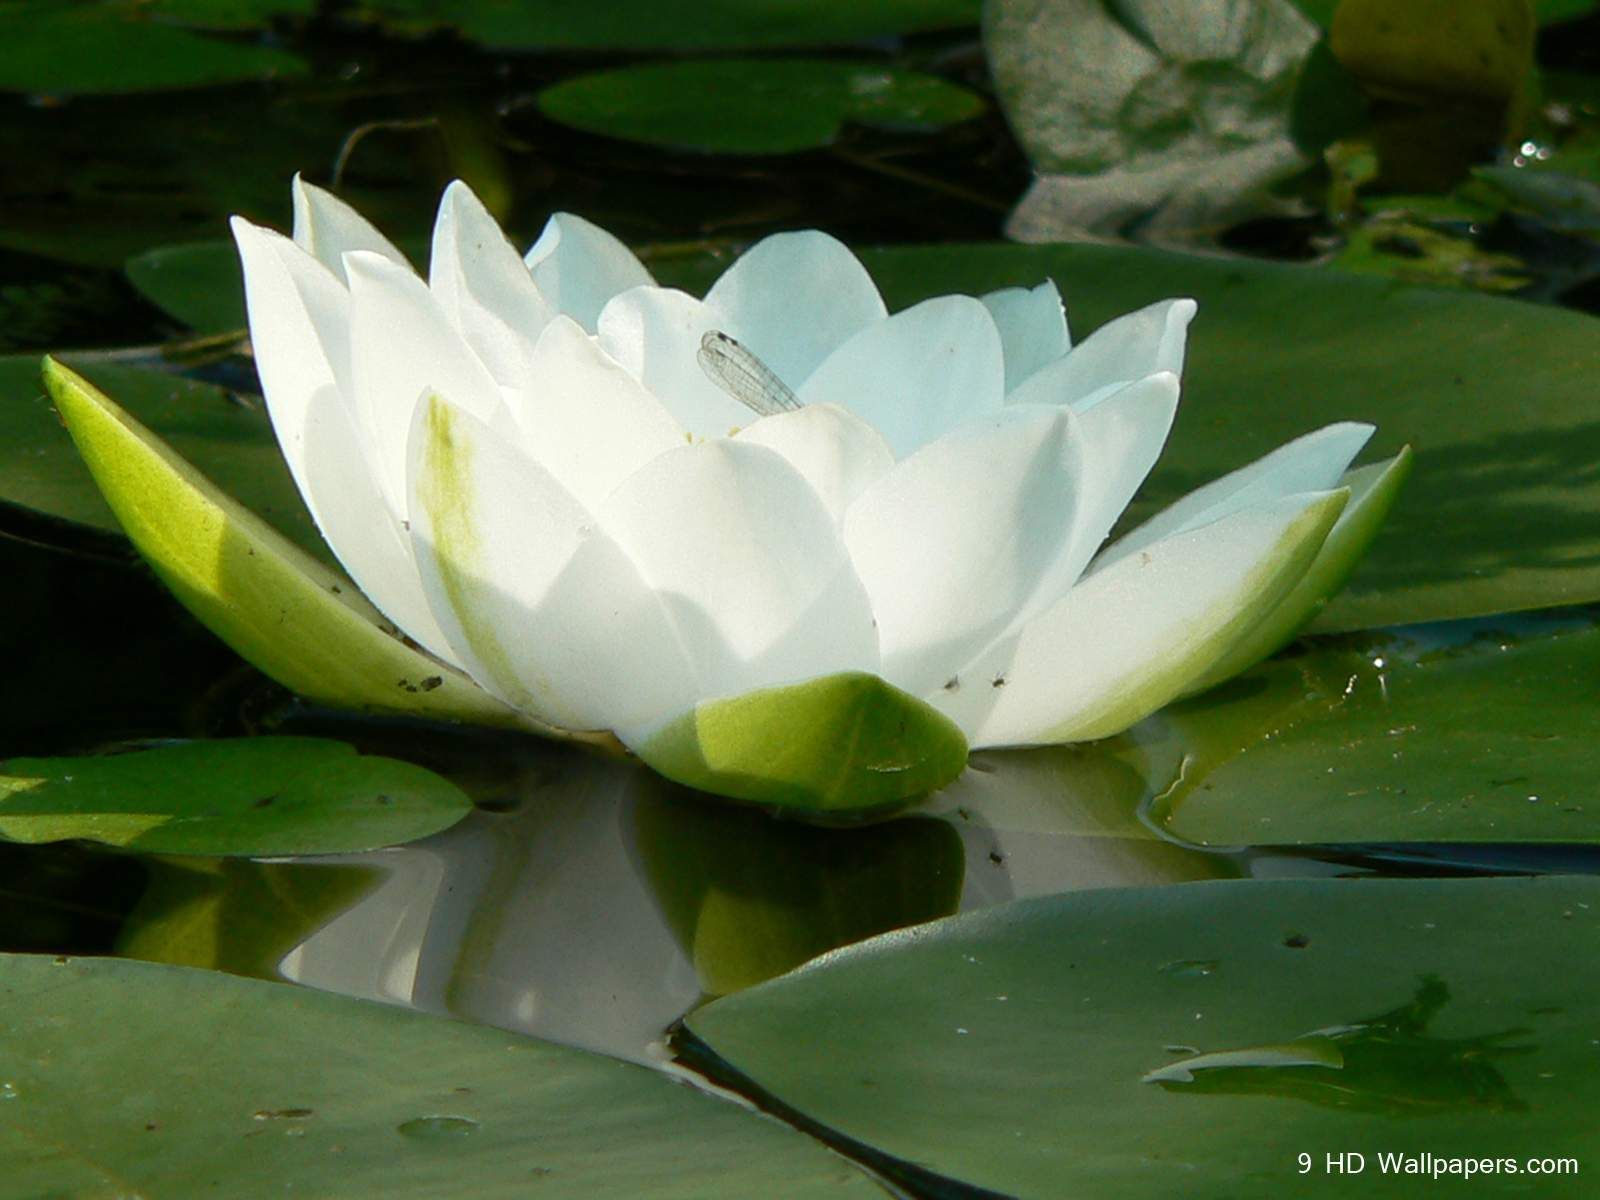 Lotus Flower Wallpaper. White lotus flower, Lotus flower symbolism, Lotus image